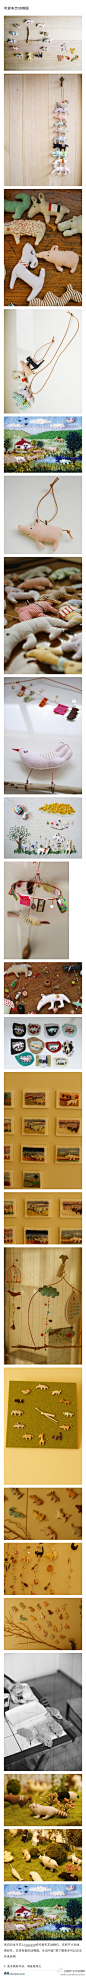 【可爱布艺动物园】来自日本手艺人happado的可爱布艺动物们，还有不少毛线绣创作。非常有爱的动物园，生动可爱~想了解更多可以点击作者官网(23张图片) http://t.cn/zjvNu8f